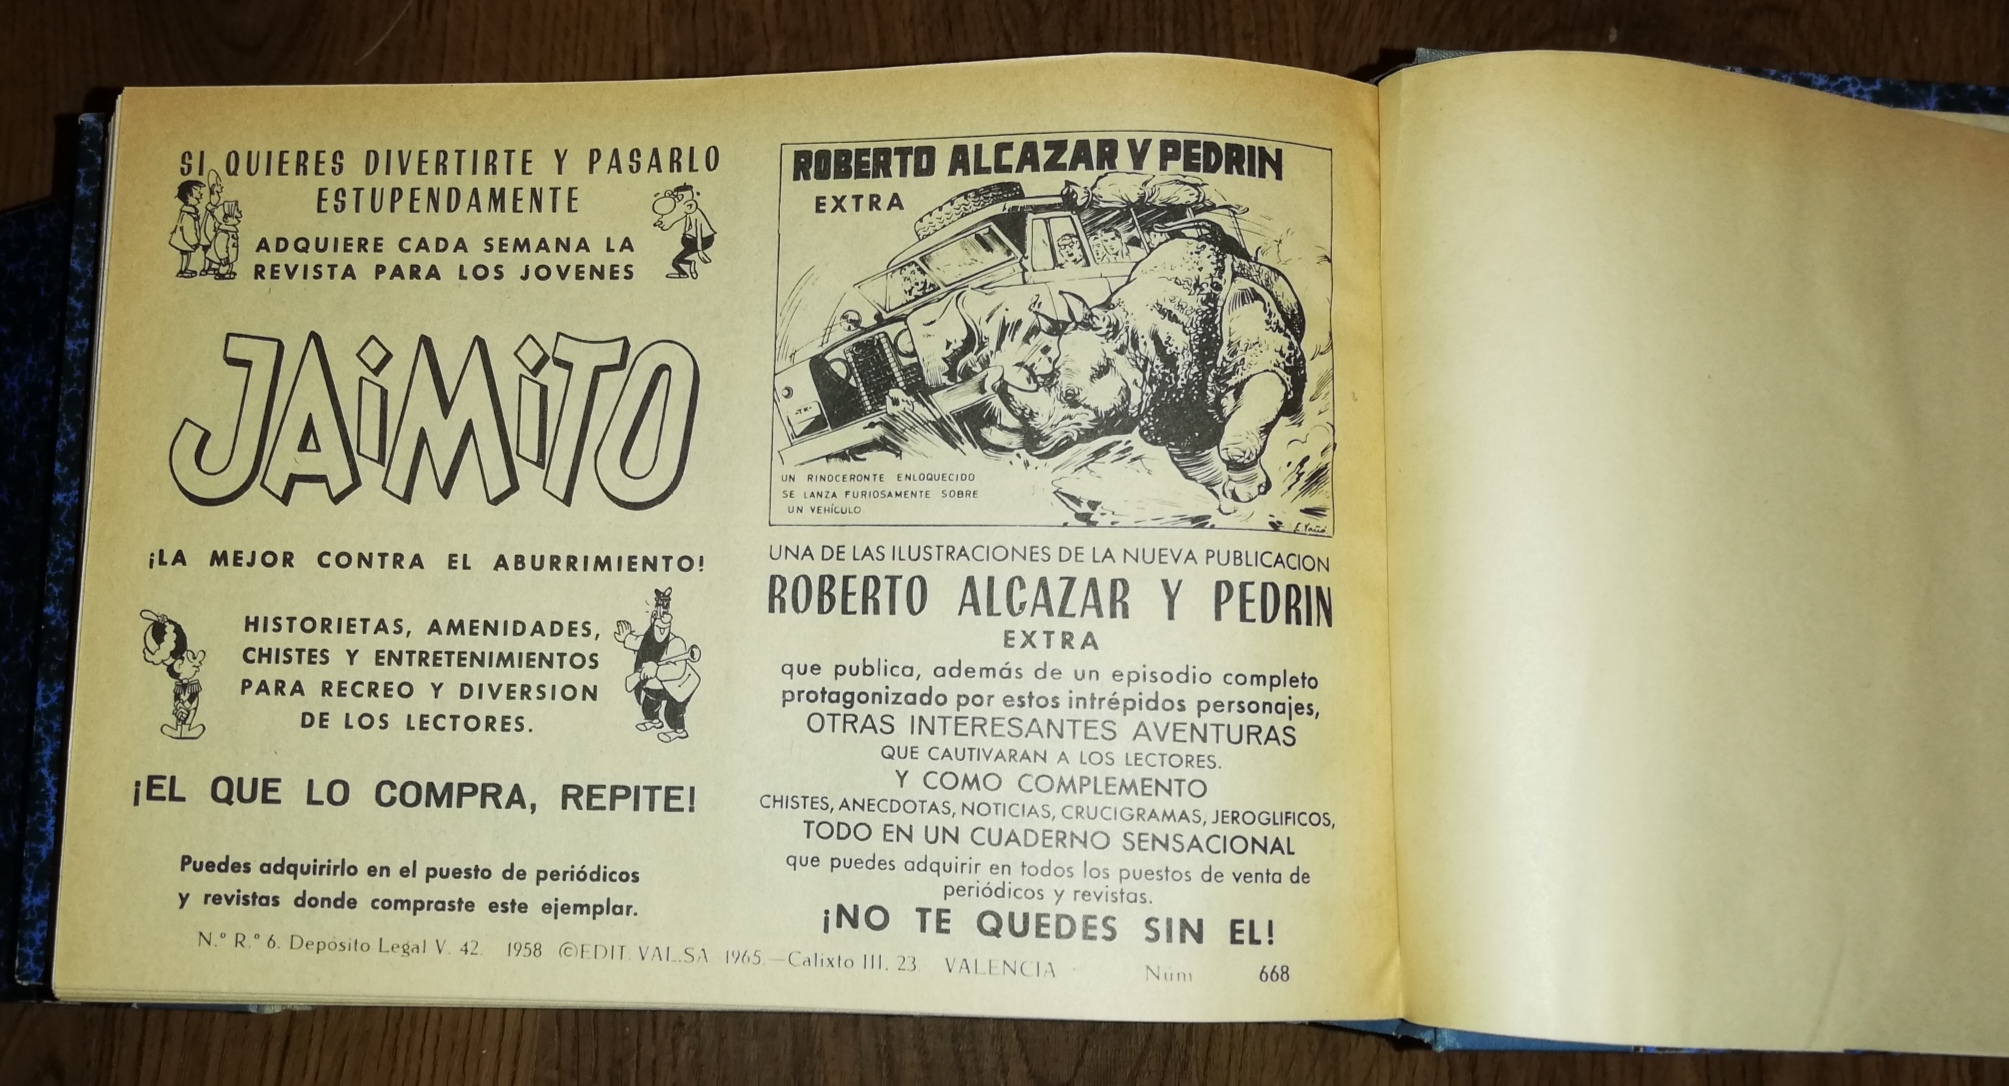 El Guerrero del Antifaz. Valenciana 1944. Colección Completa, 668 ejemplares encuadernada en 16 tomos